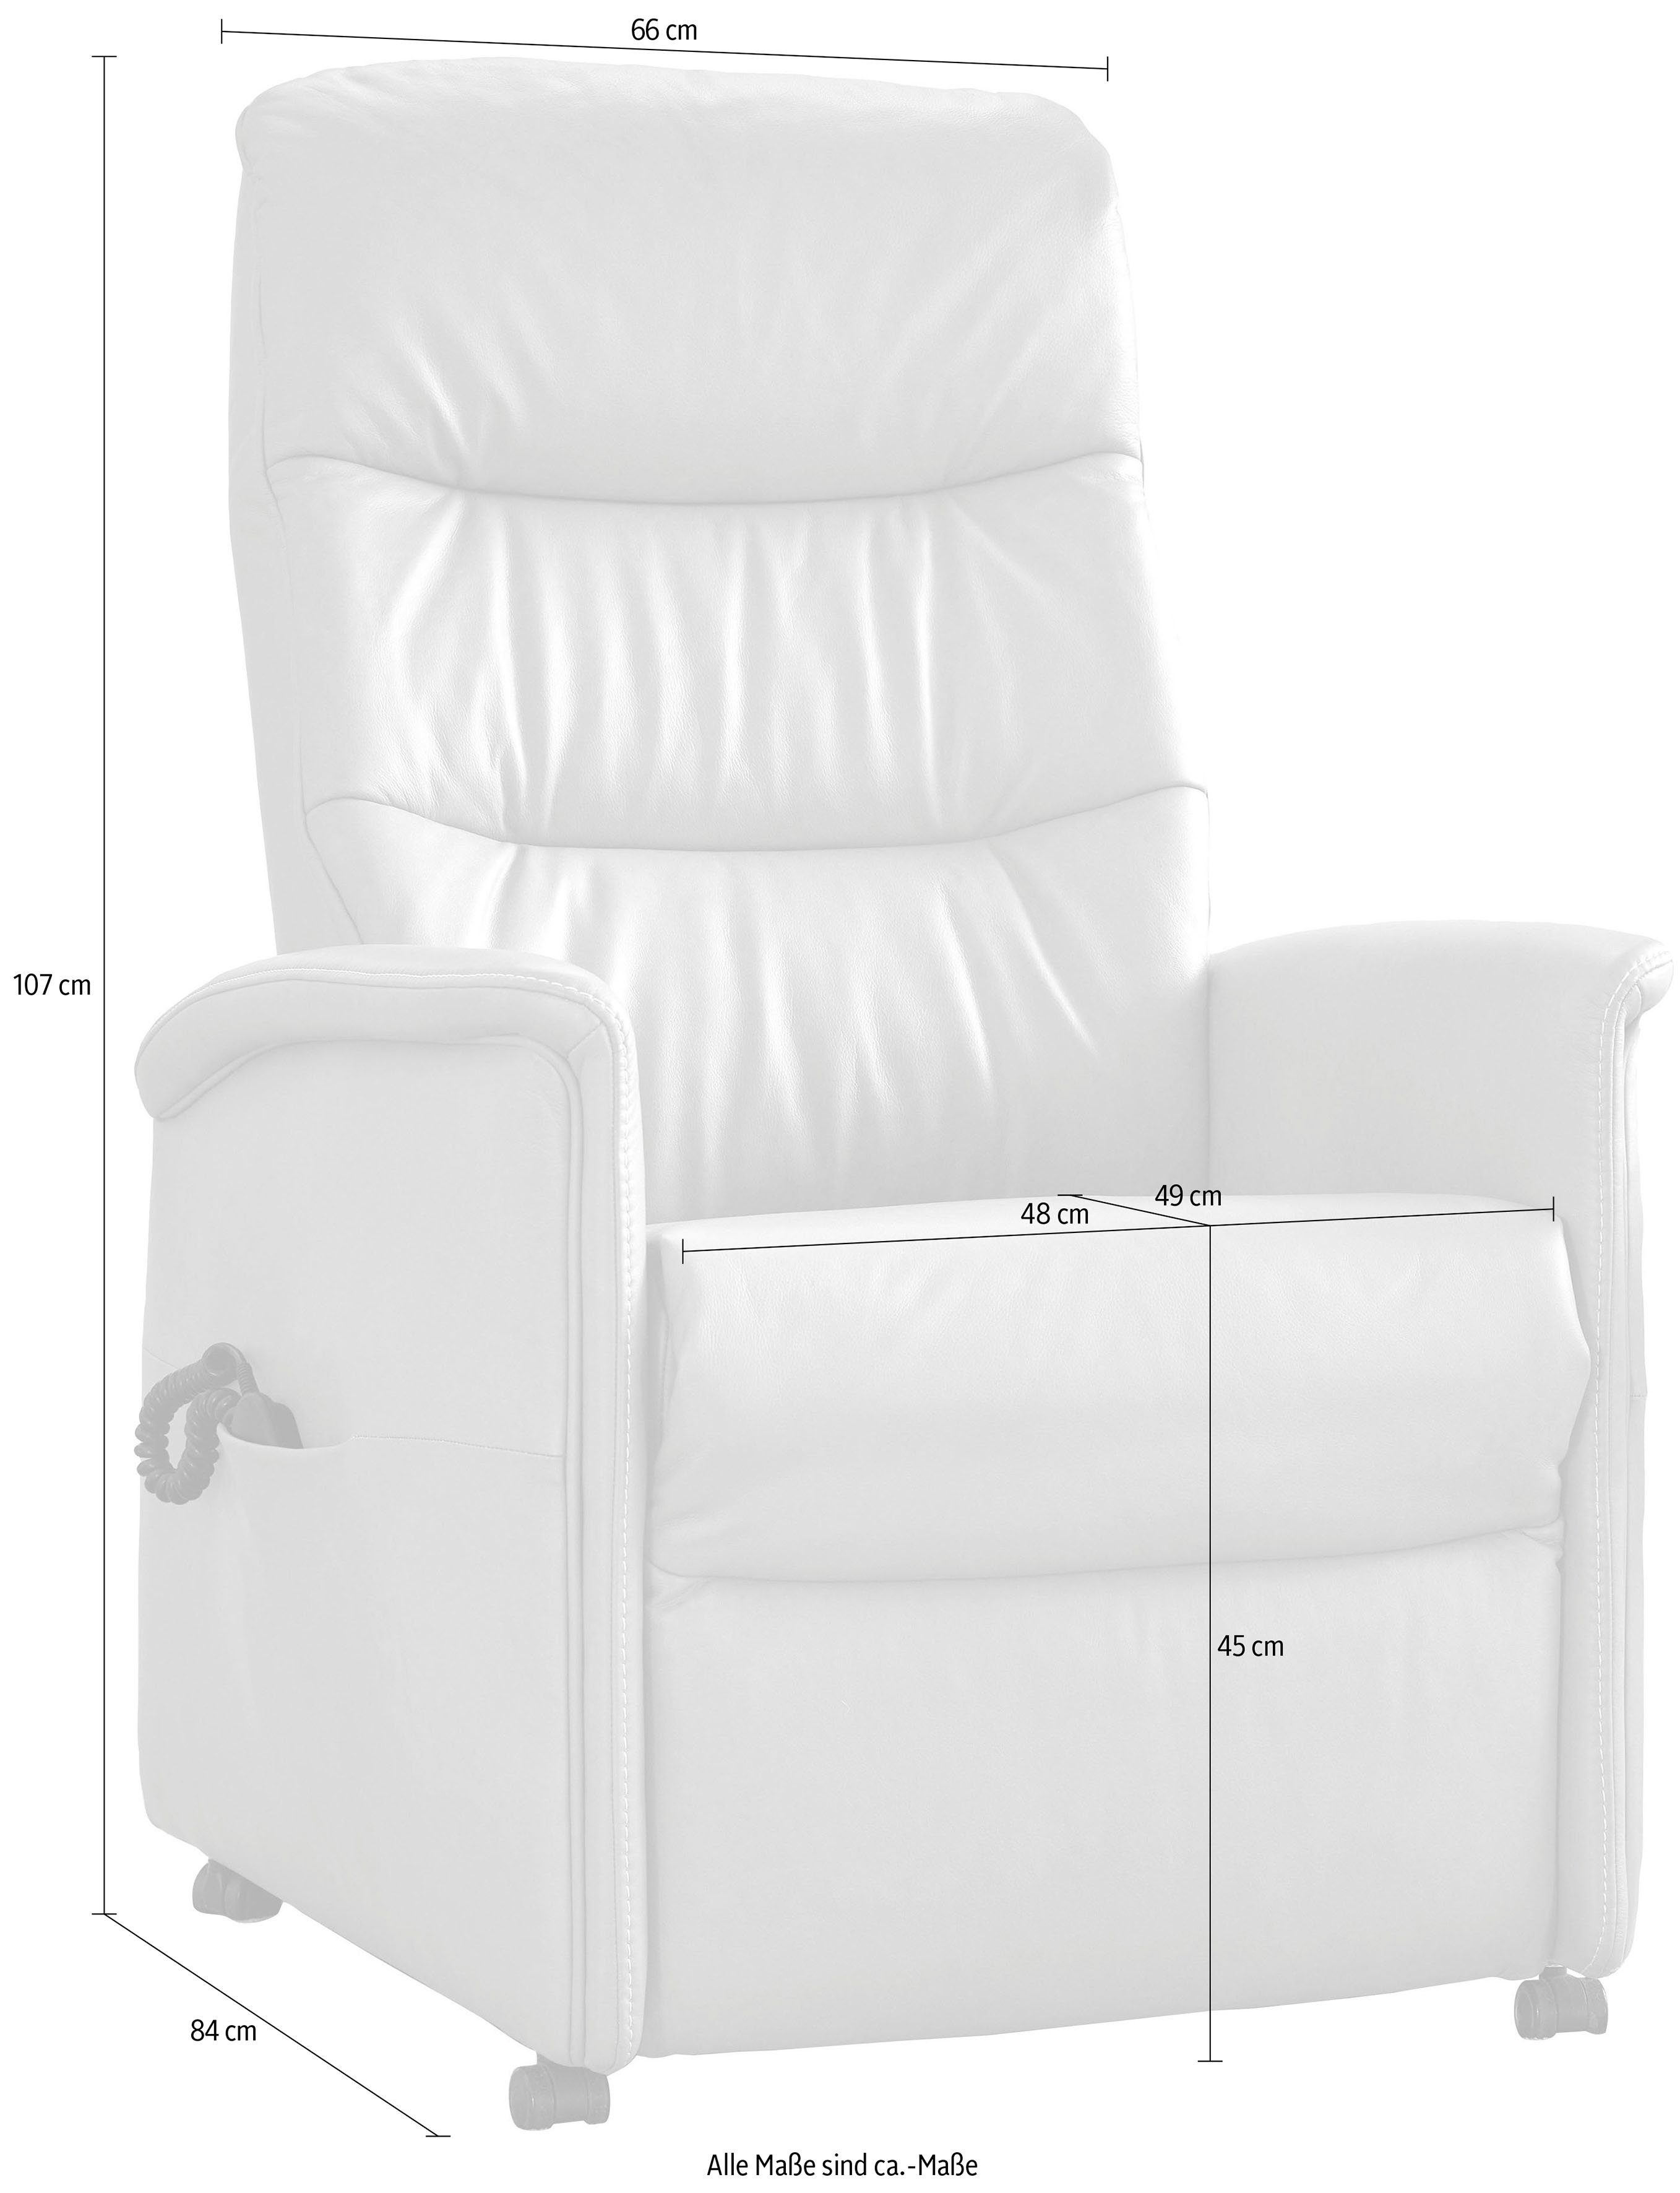 himolla Relaxsessel oder 9051, in Sitzhöhen, manuell verstellbar, Aufstehhilfe himolla 3 elektrisch